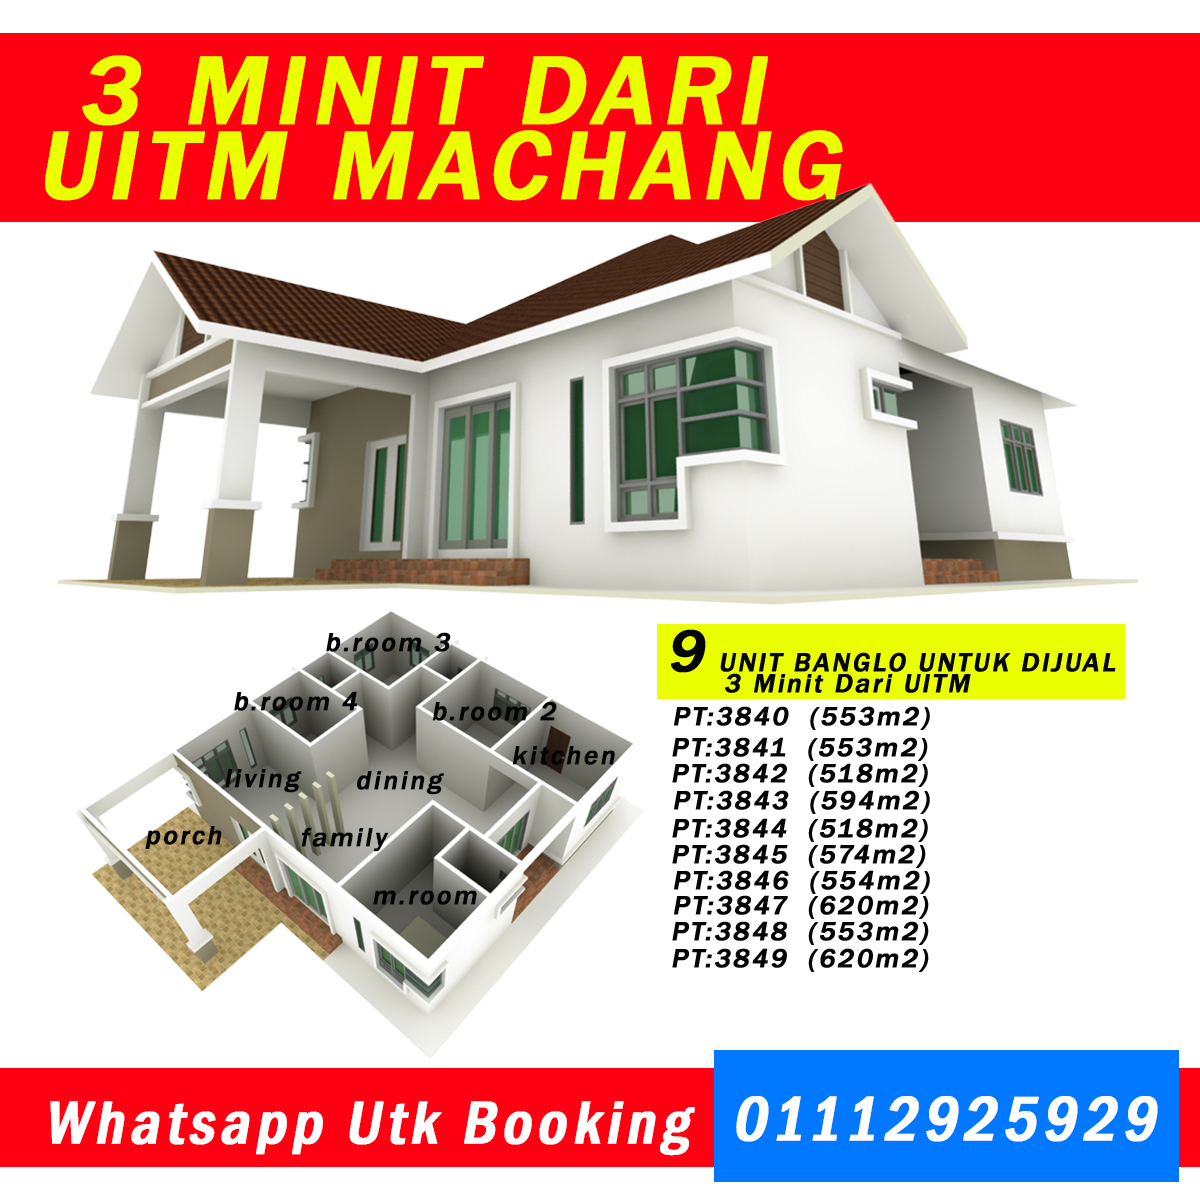 Rumah Banglo Untuk Dijual Di Machang 3 Minit Dari UITM 